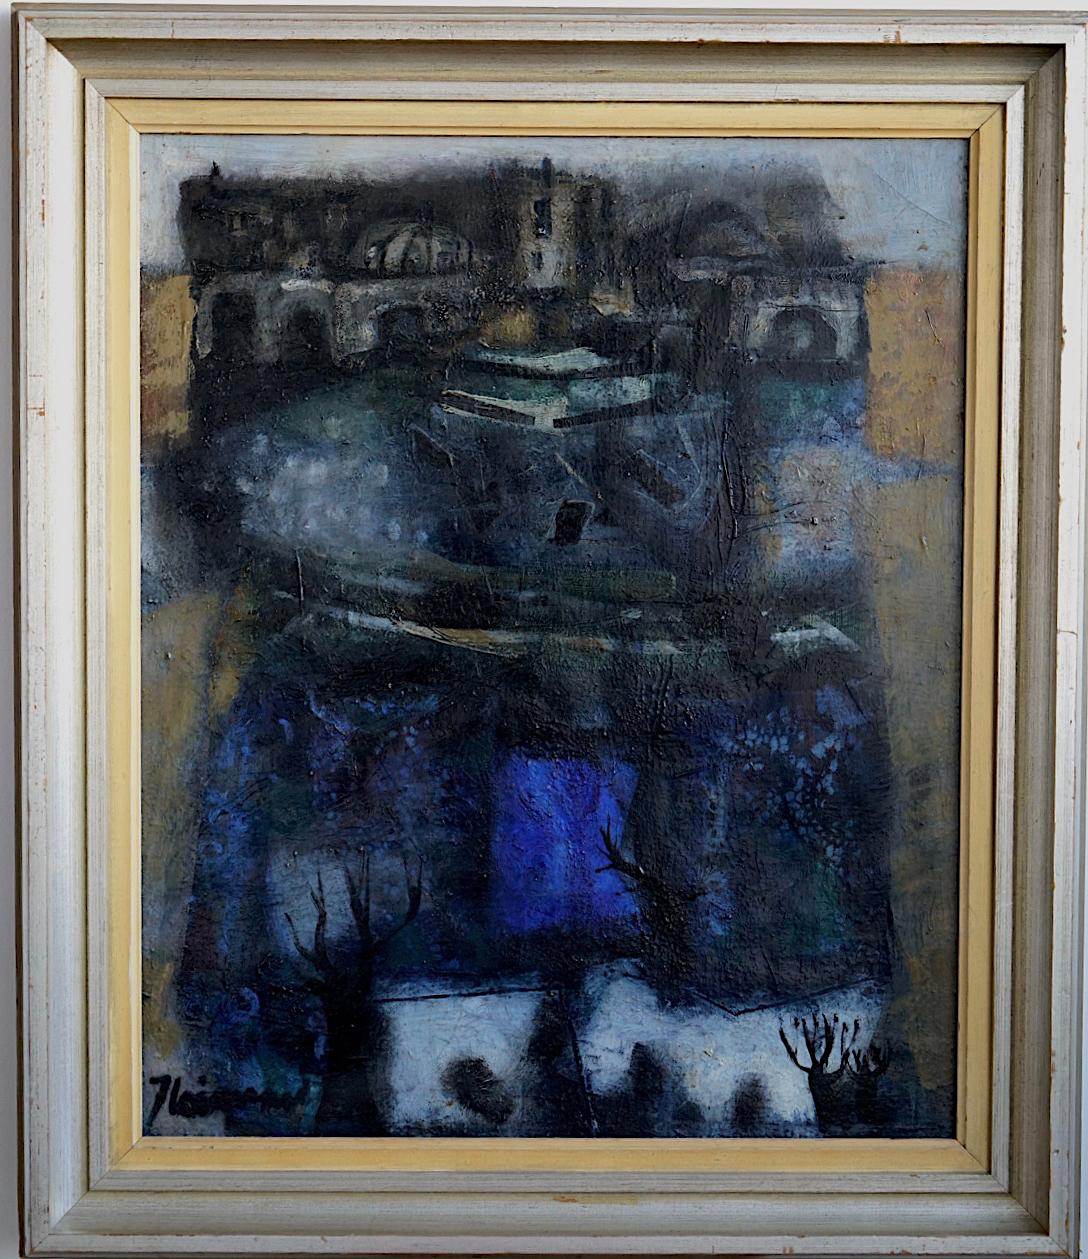 Stadtbild in Öl auf Leinwand von James Coignard, Frankreich (1925-2008).
Signiert und gerahmt. Frühe Periode.
Leinwandgröße 28,5